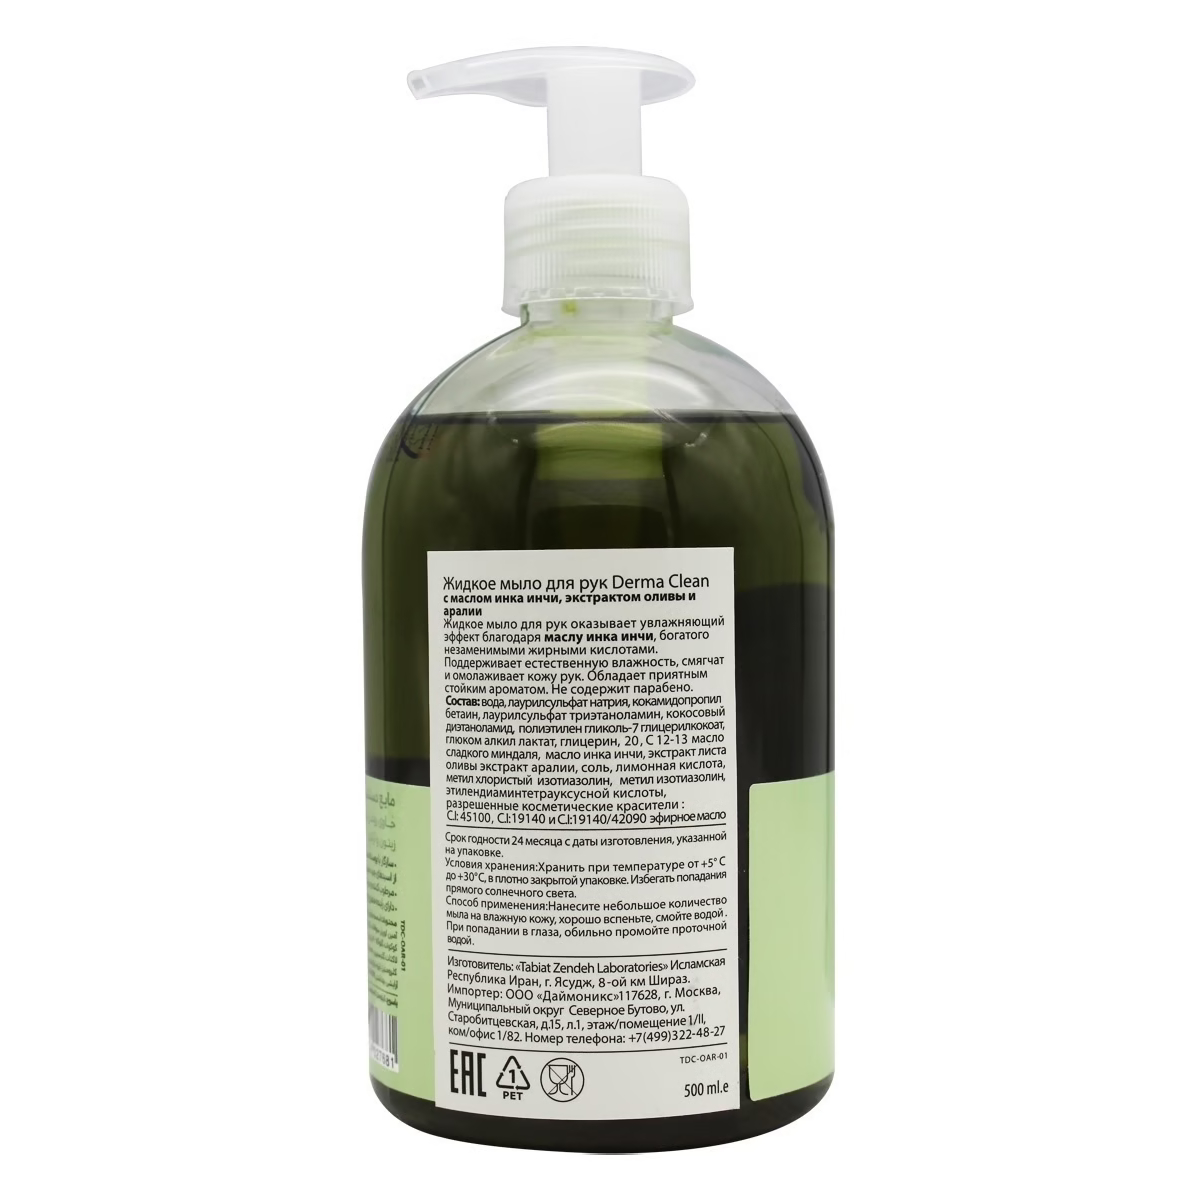 Мыло жидкое Derma clean с экстрактом оливы и аралии, 500 мл - фото 2